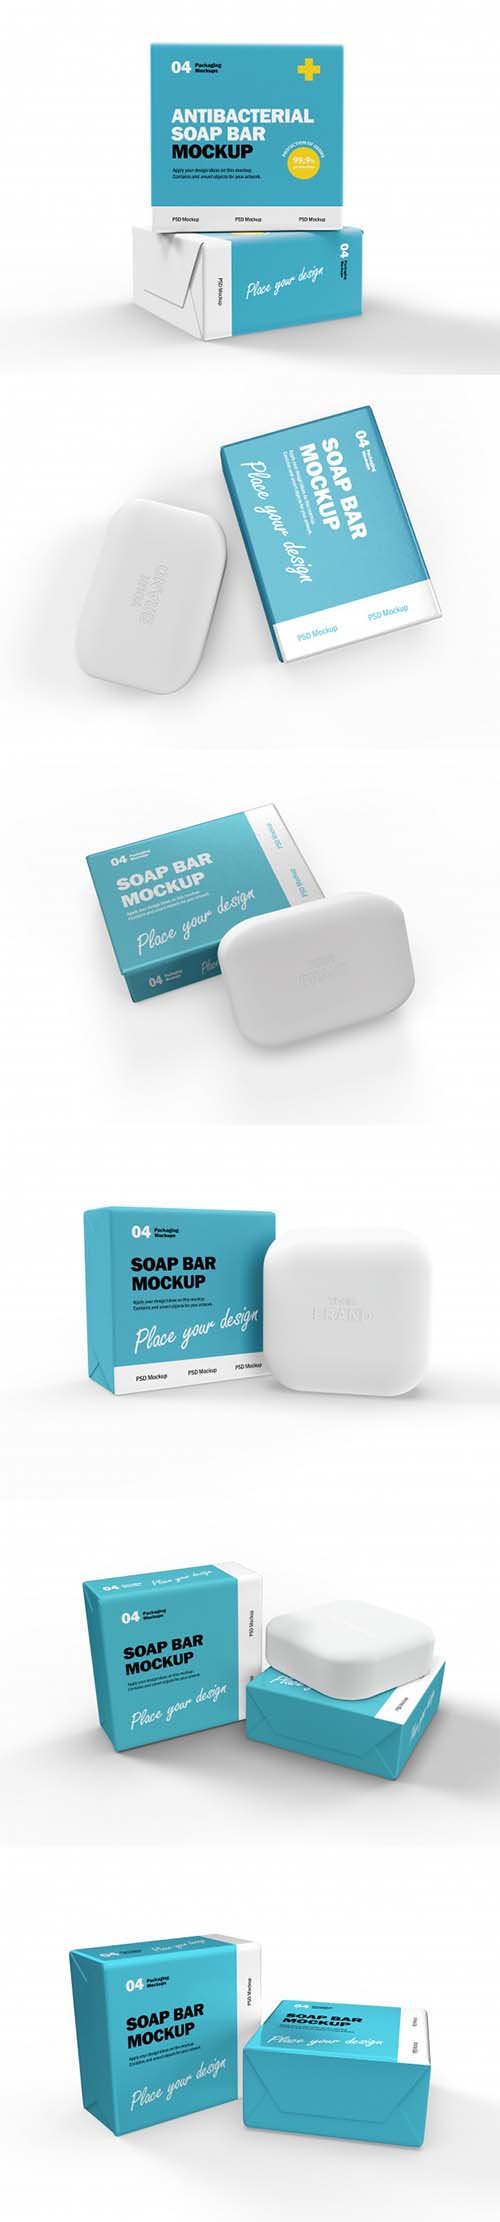 Antibacterial soap boxes mockup